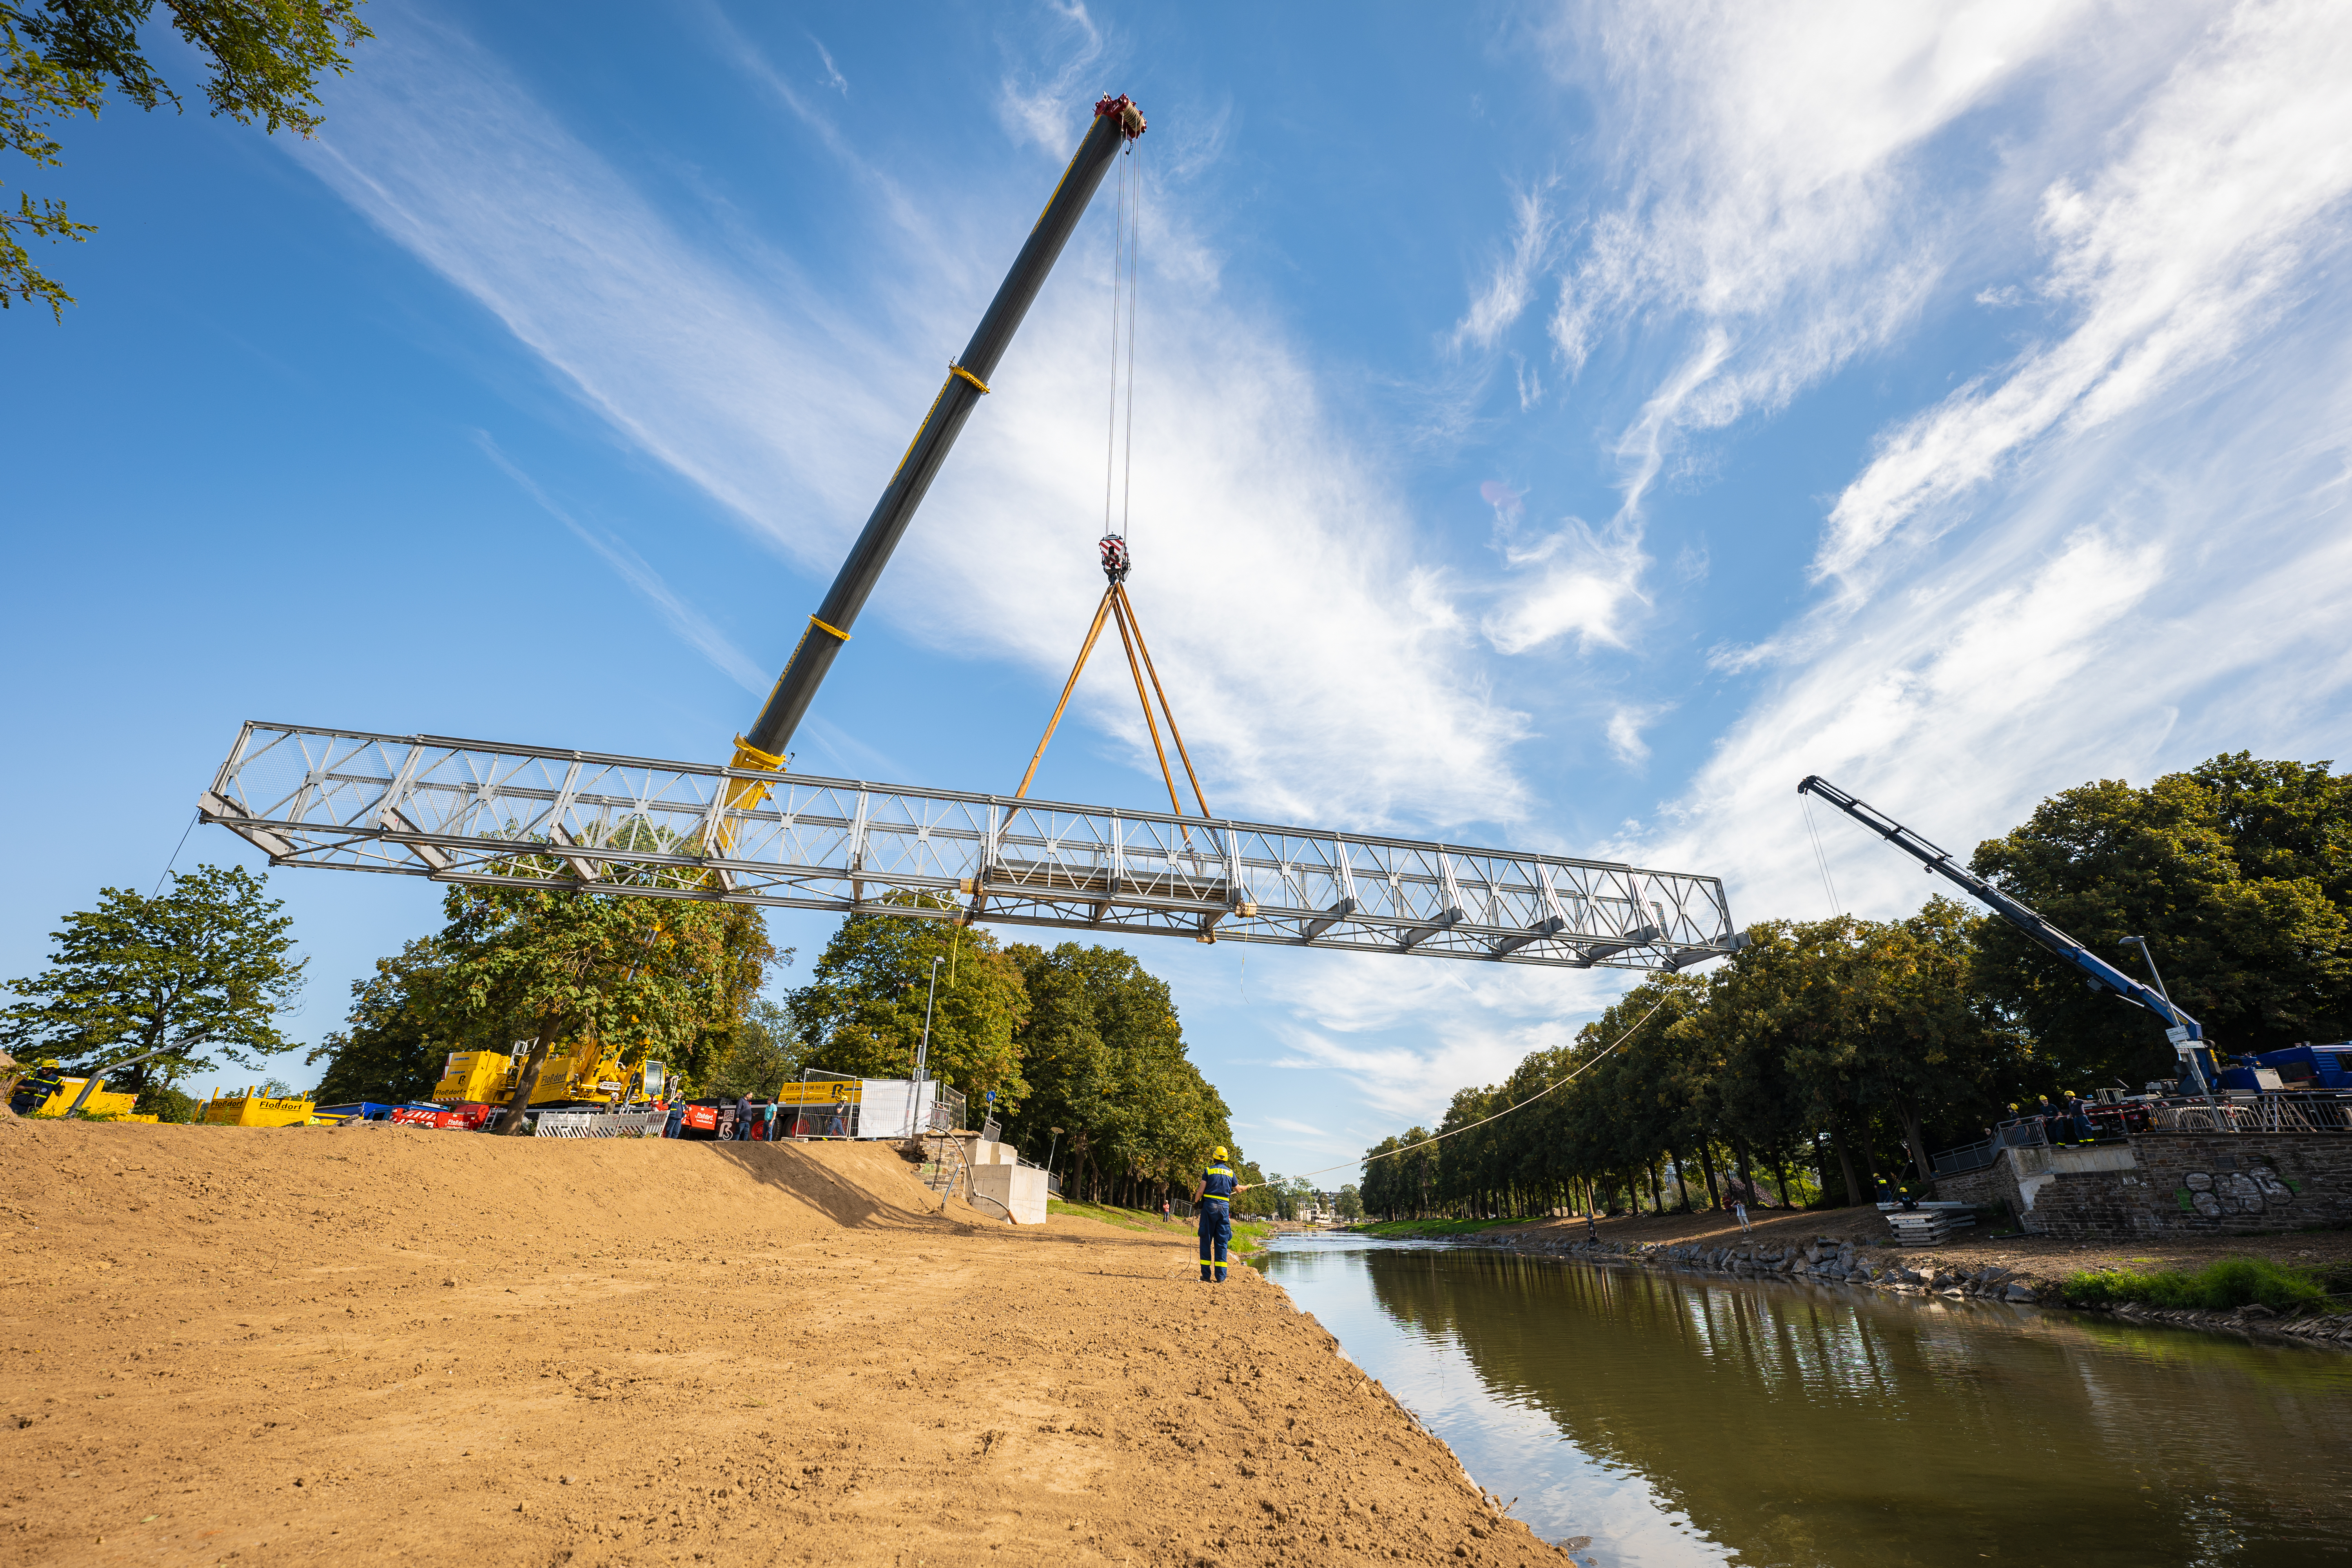 Bau einer Behilfsbrücke über der Ahr in Bad Neuenahr-Ahrweiler nach der Flutkatastrophe.